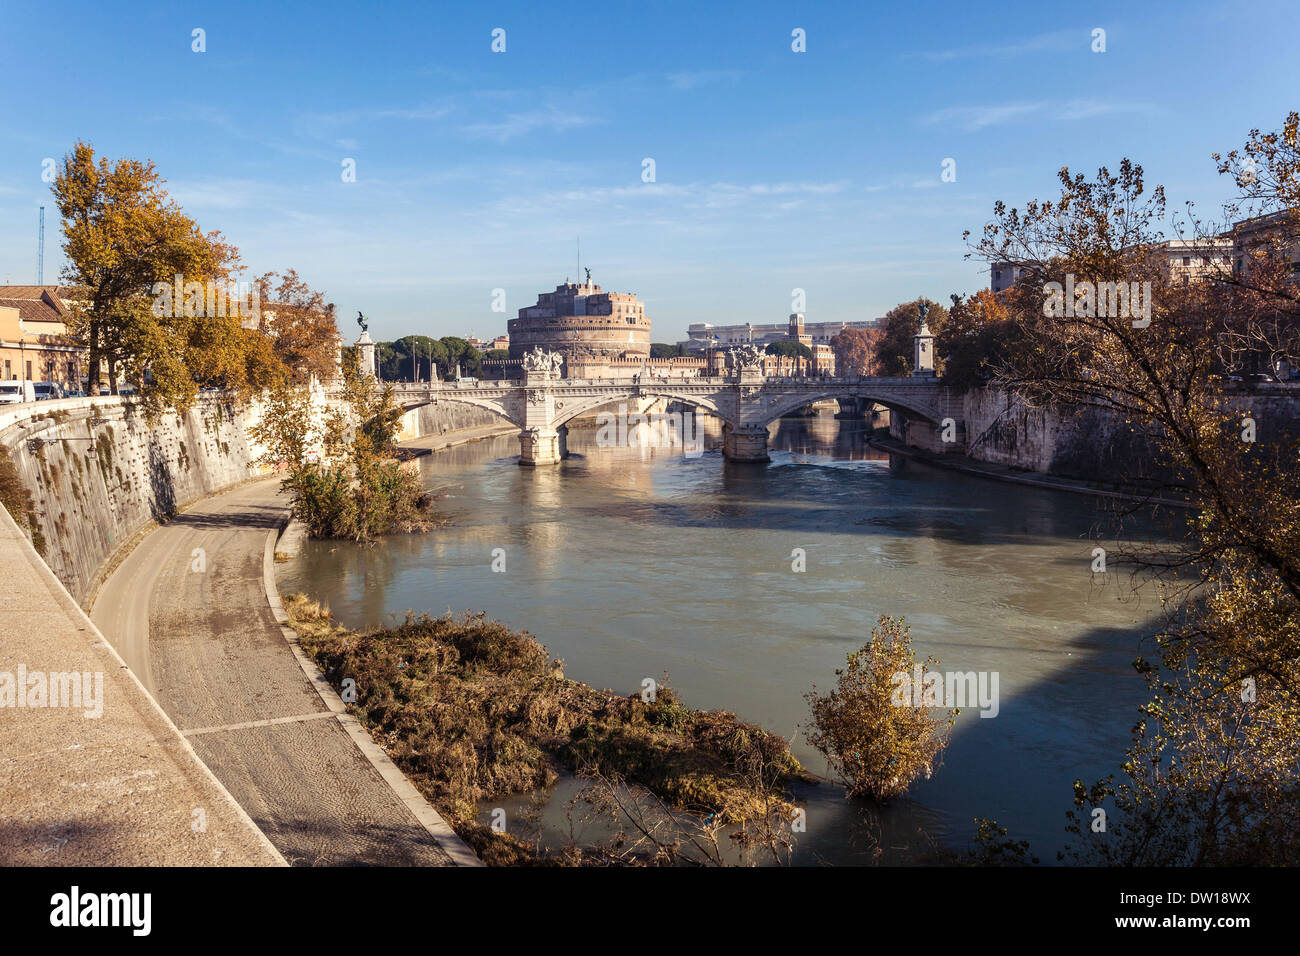 Tiber River in Rome, Italy. Stock Photo